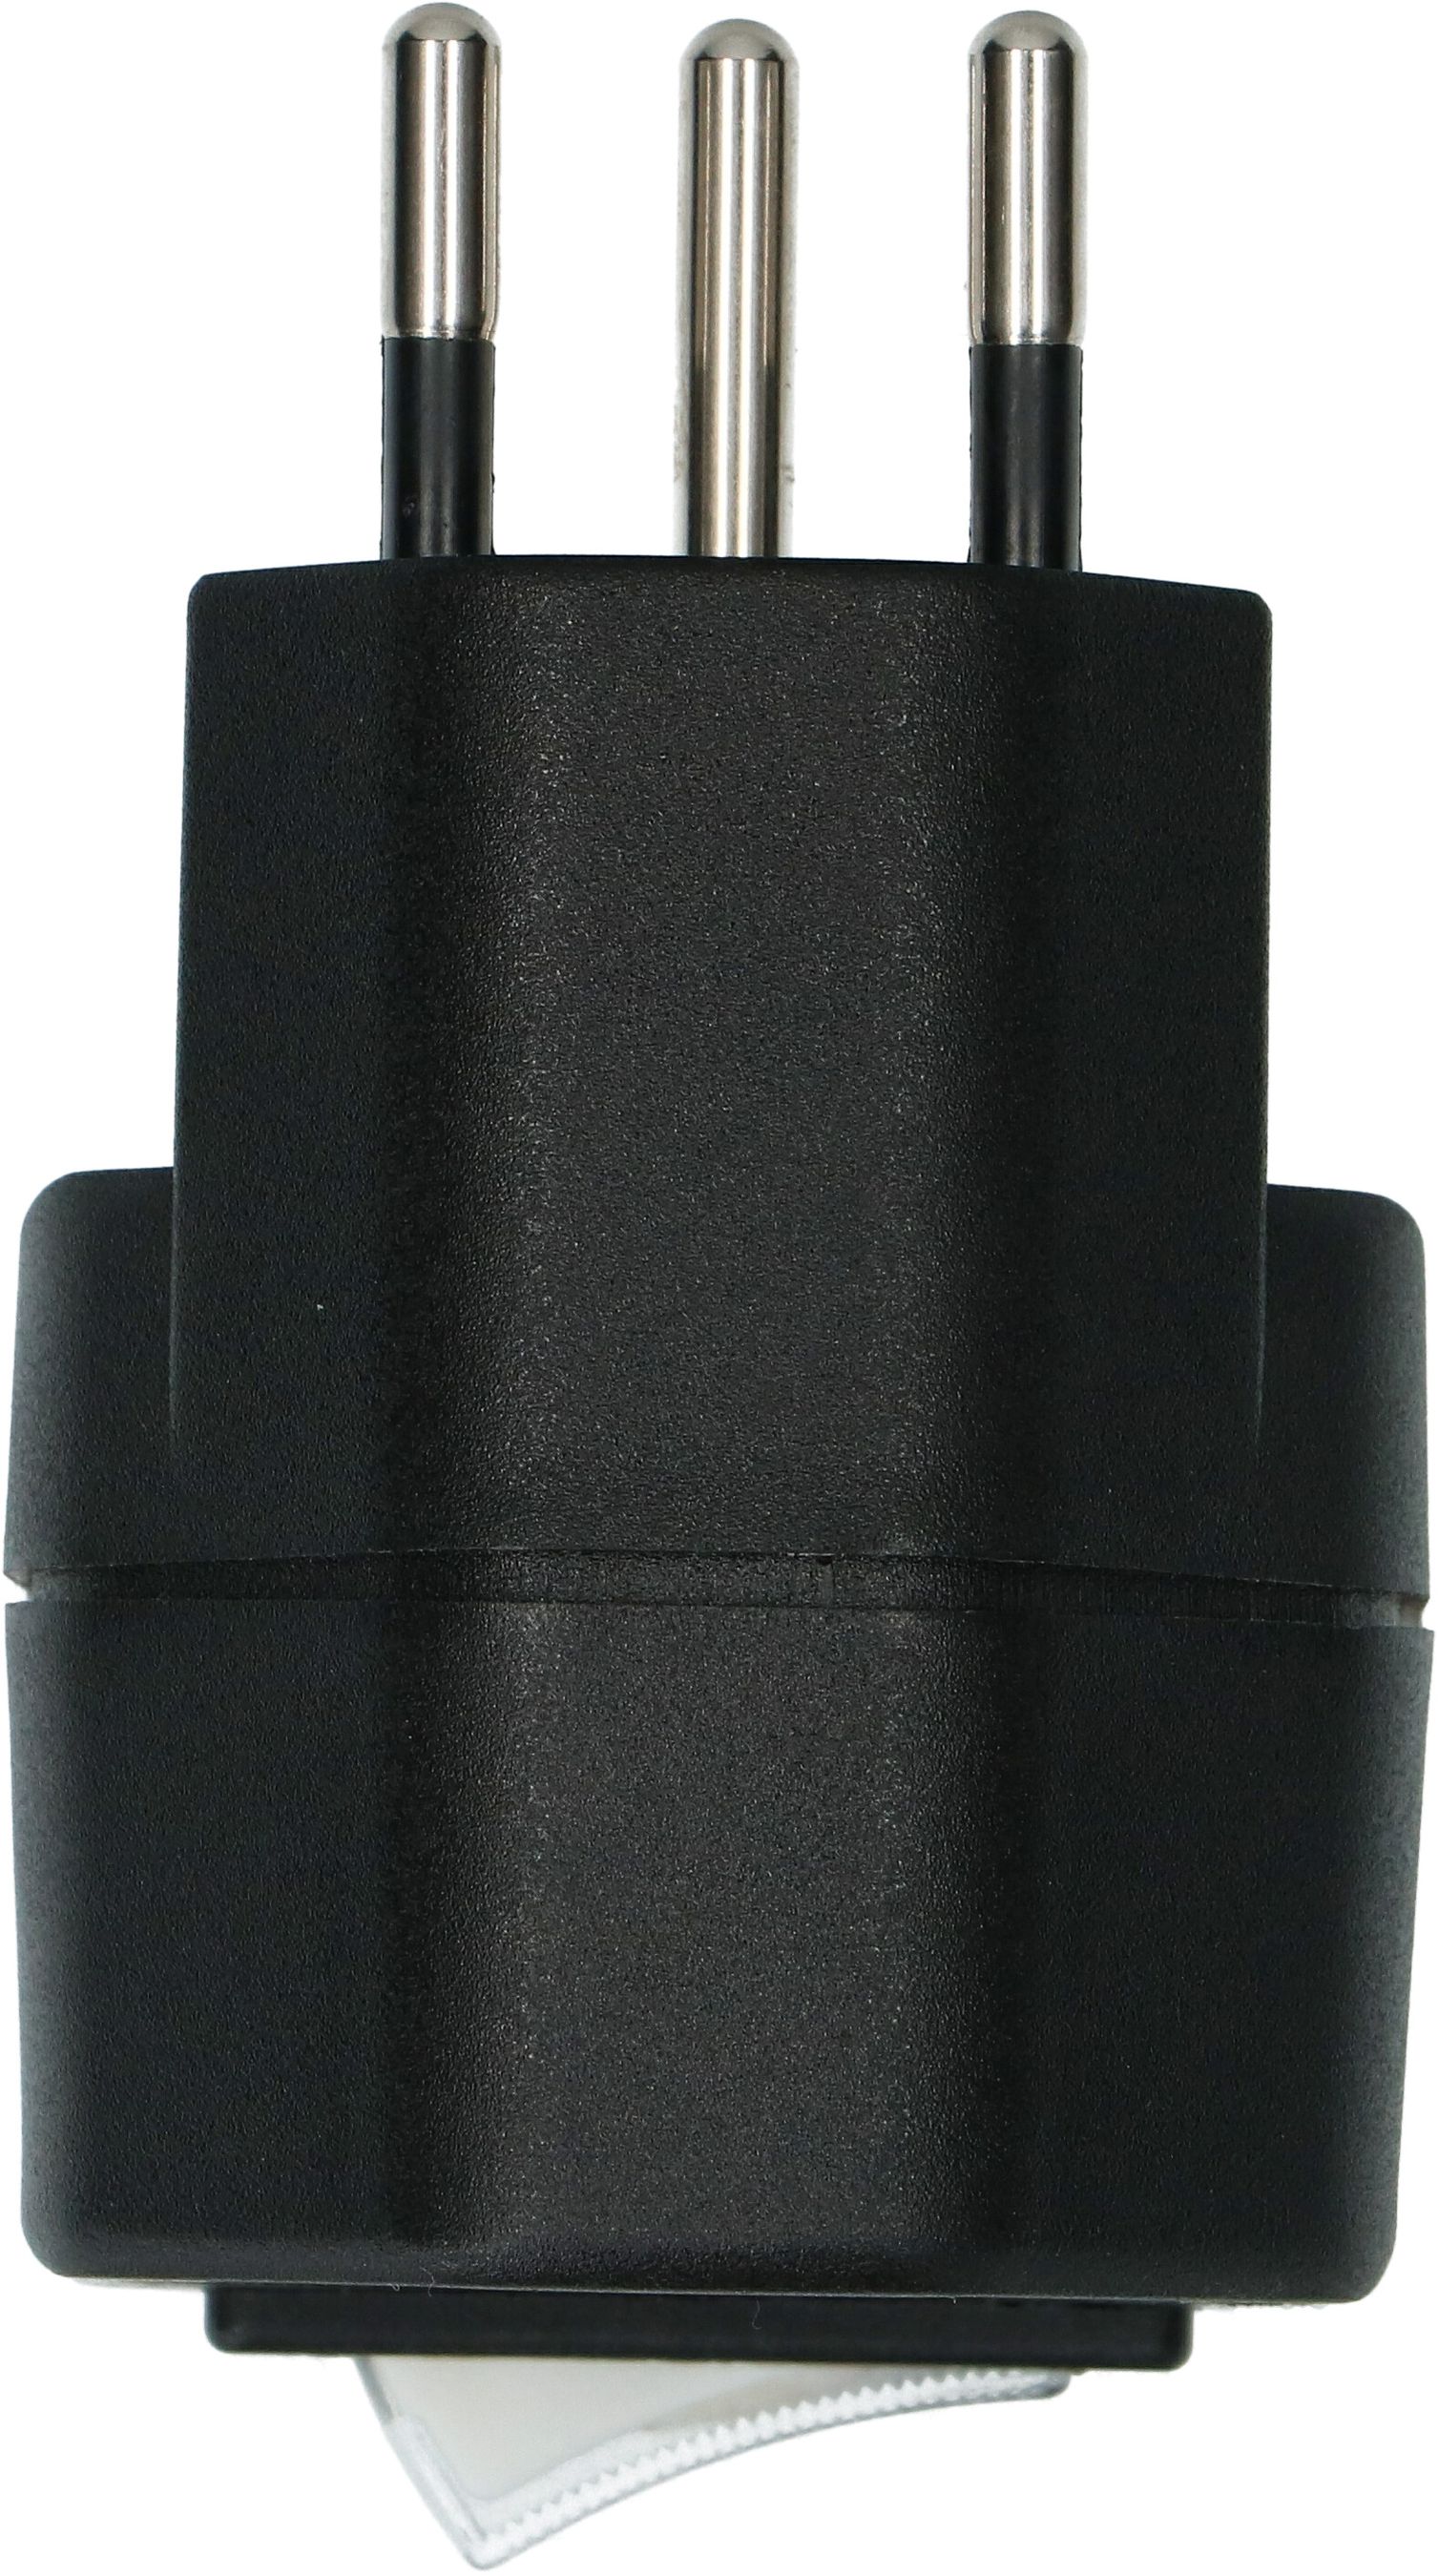 Abzweigstecker 1x Typ 13 3-polig schwarz Schalter